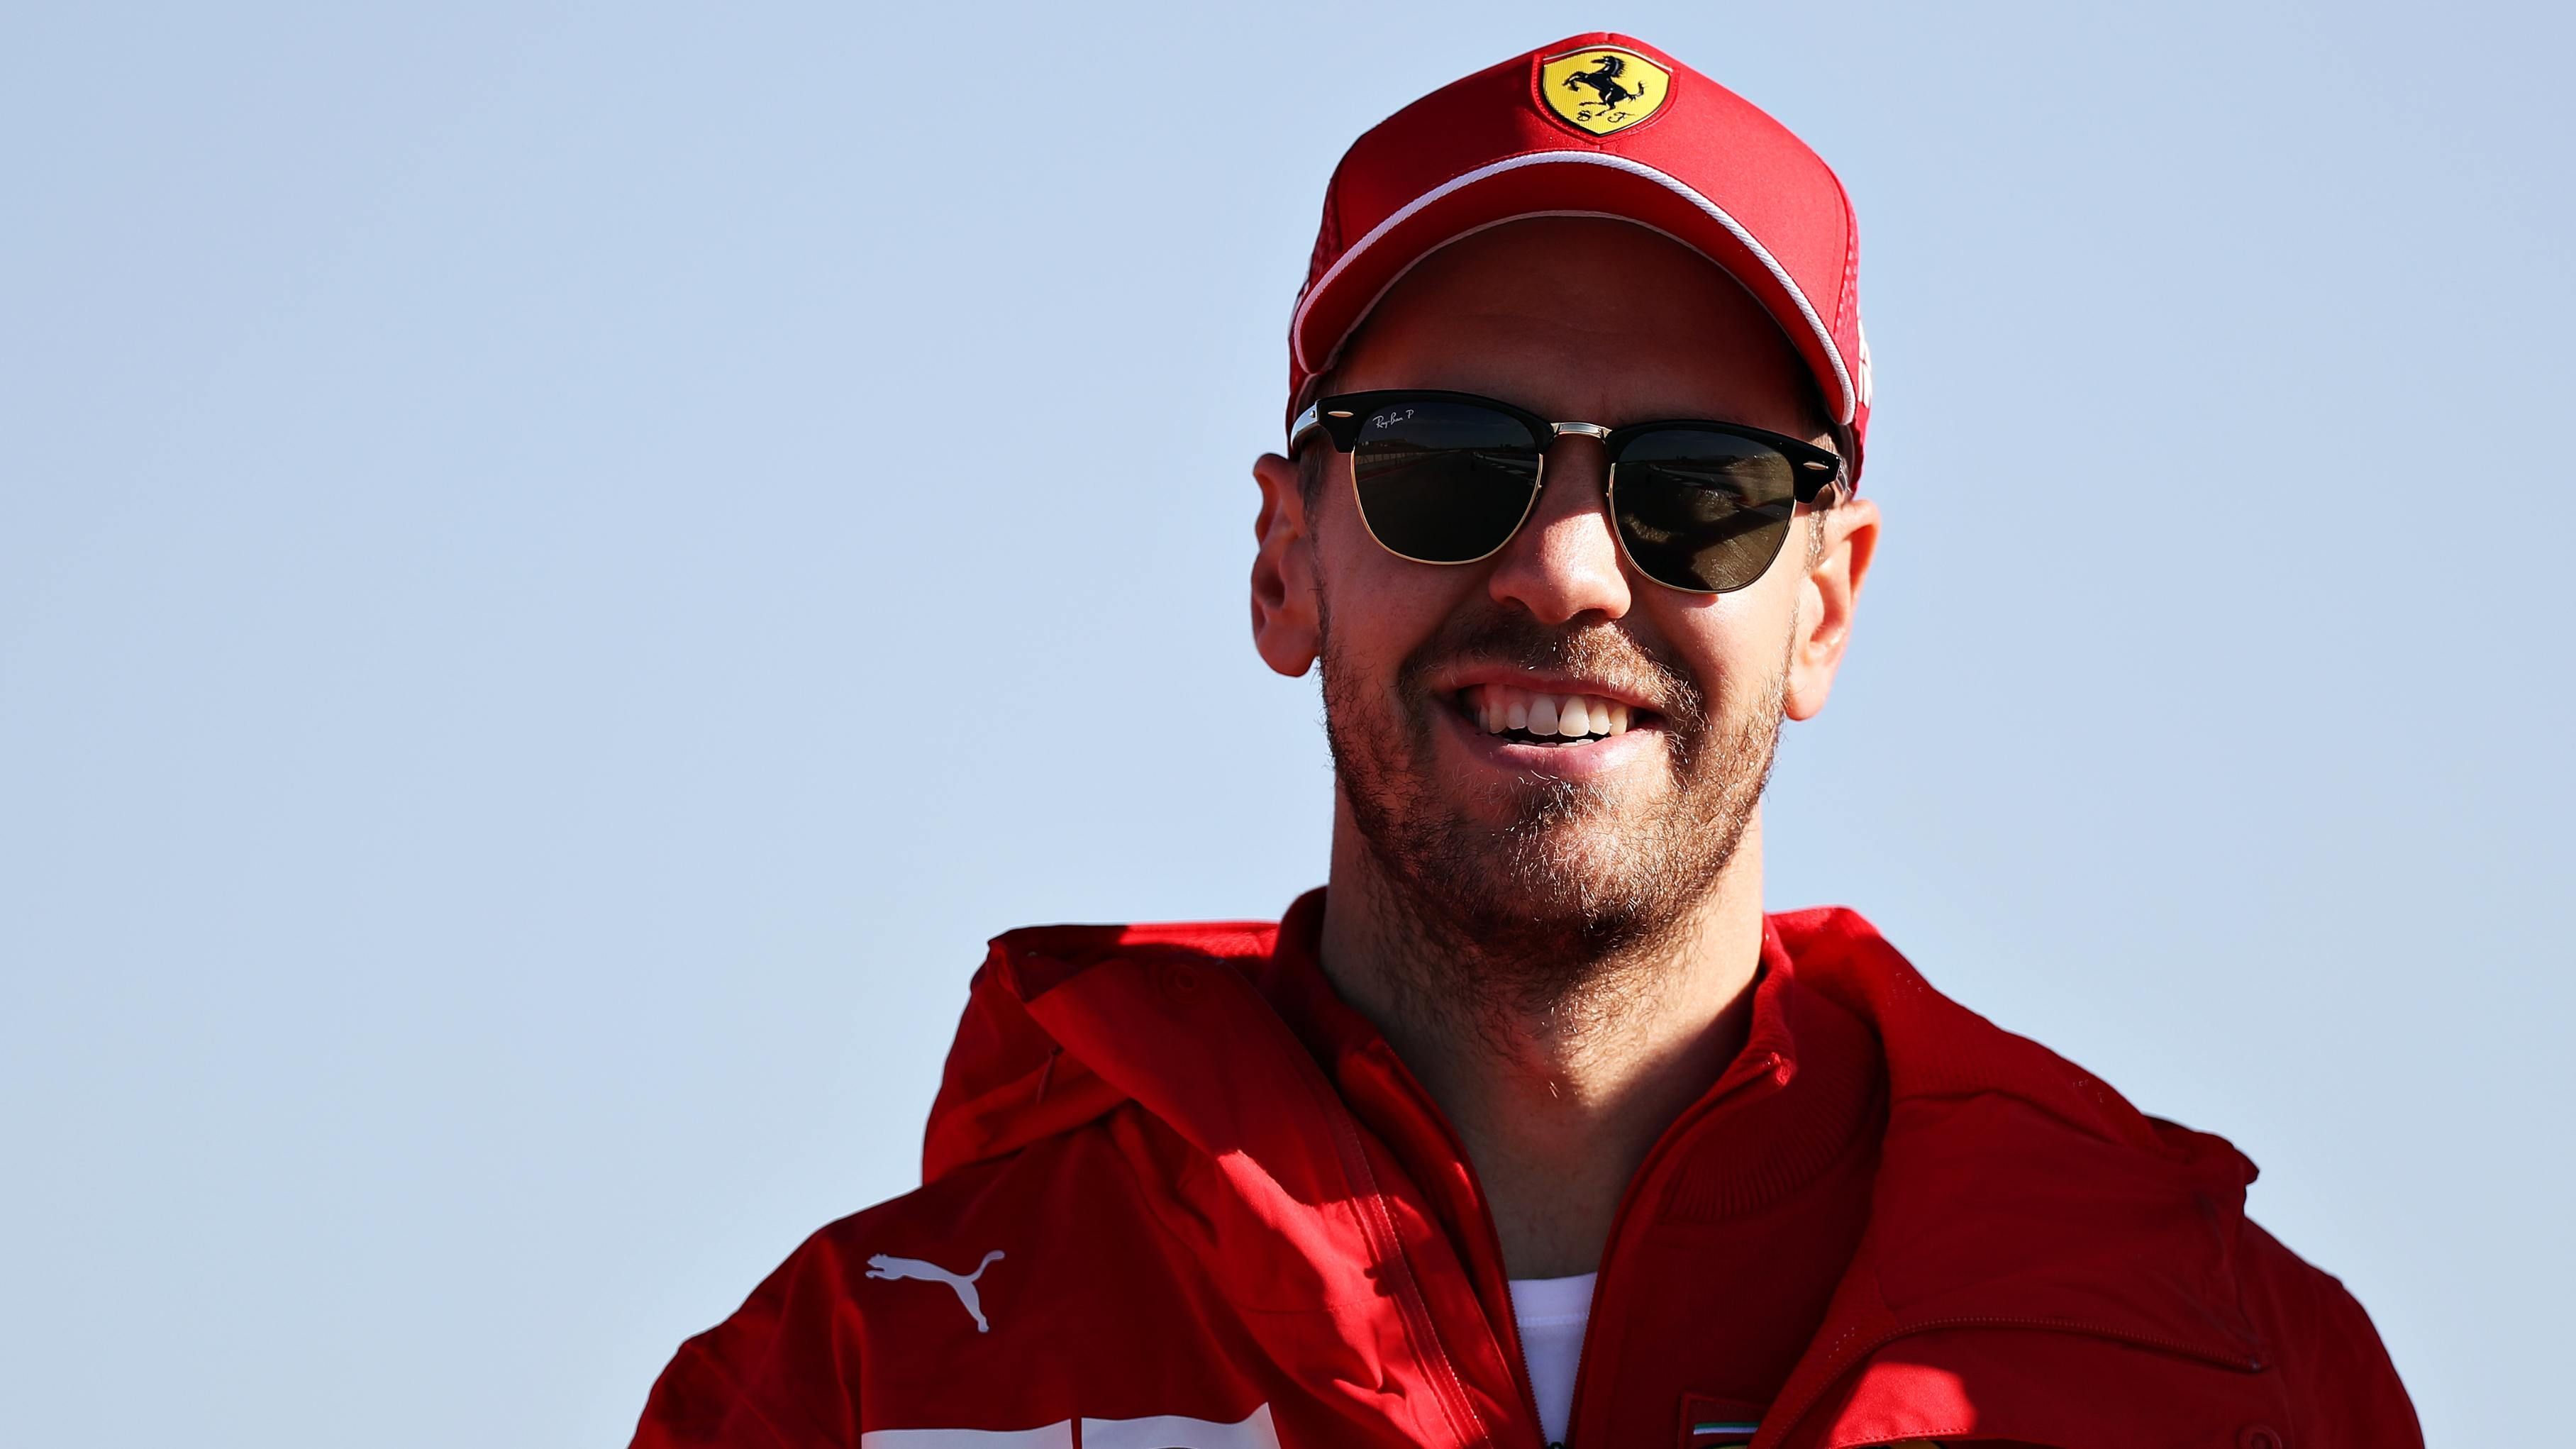 
                <strong>Nach dem Vettel-Beben: Die Zahlen zu seinem neuen Vertrag bei Aston Martin</strong><br>
                Nachdem bekannt wurde, dass Sebastian Vettel zur kommenden Saison von Ferrari zu Racing Point (dann Aston Martin) wechseln wird, häuften sich die Spekulationen und Medienberichte zu den möglichen neuen Vertragsinhalten von Vettels Kontrakt beim englischen Autohersteller. ran.de gibt einen Überblick, wie der Vertrag aufgebaut sein könnte und welche Faktoren hier eine Rolle spielen sollen. (Quelle: Motorsport Total)
              